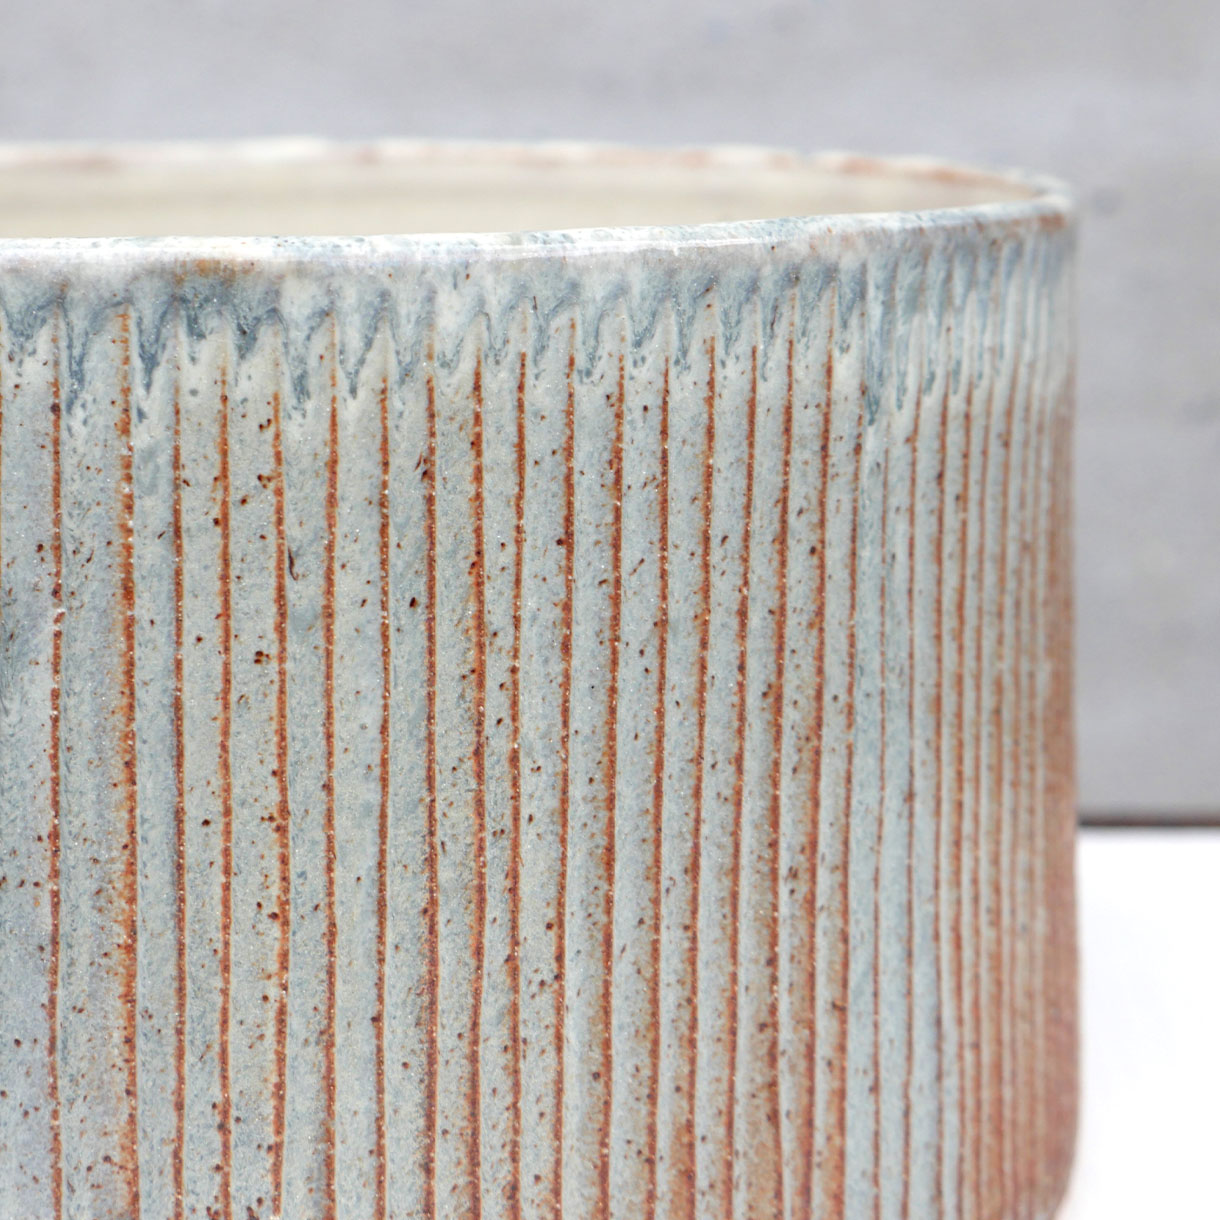 Keramik cylinderkrukke. Værket er skabt af keramiker Pernille Buch. Krukkens blå/grå og orange farver er inspireret af havet, klitterne og strandene rundt om Samsø. 